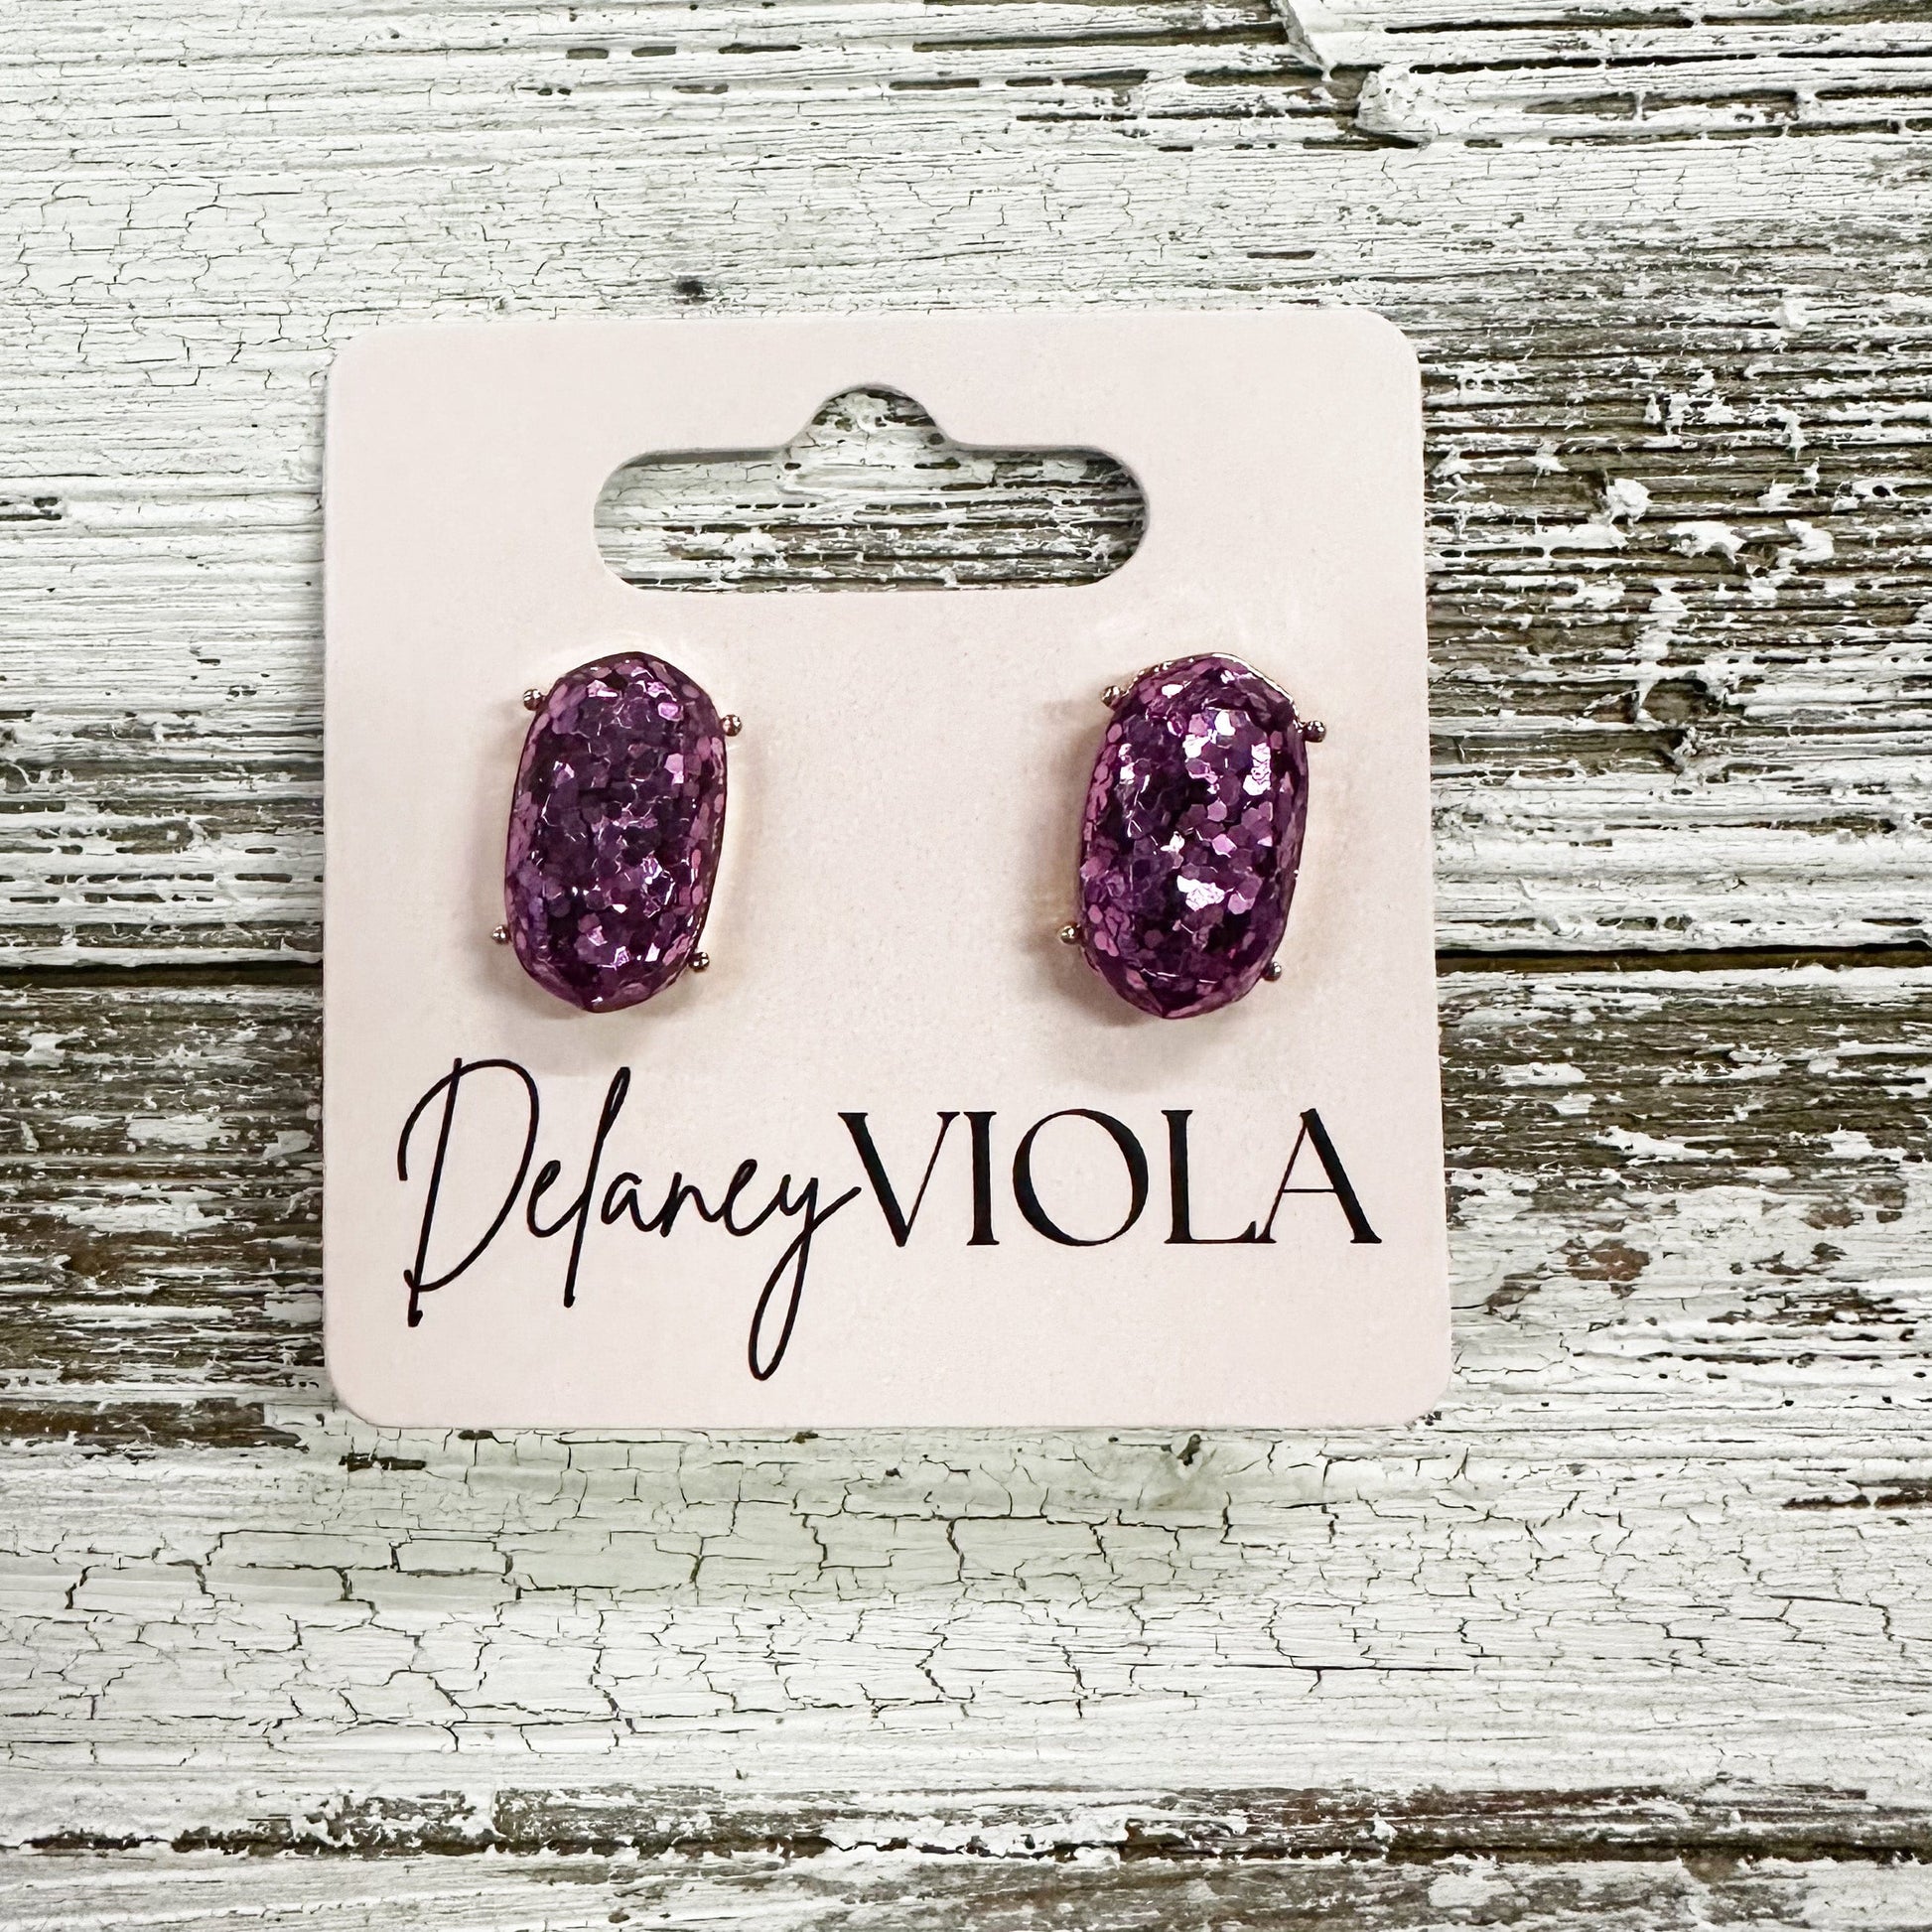 Envy Stylz Boutique Women - Accessories - Earrings Purple Stud Earrings